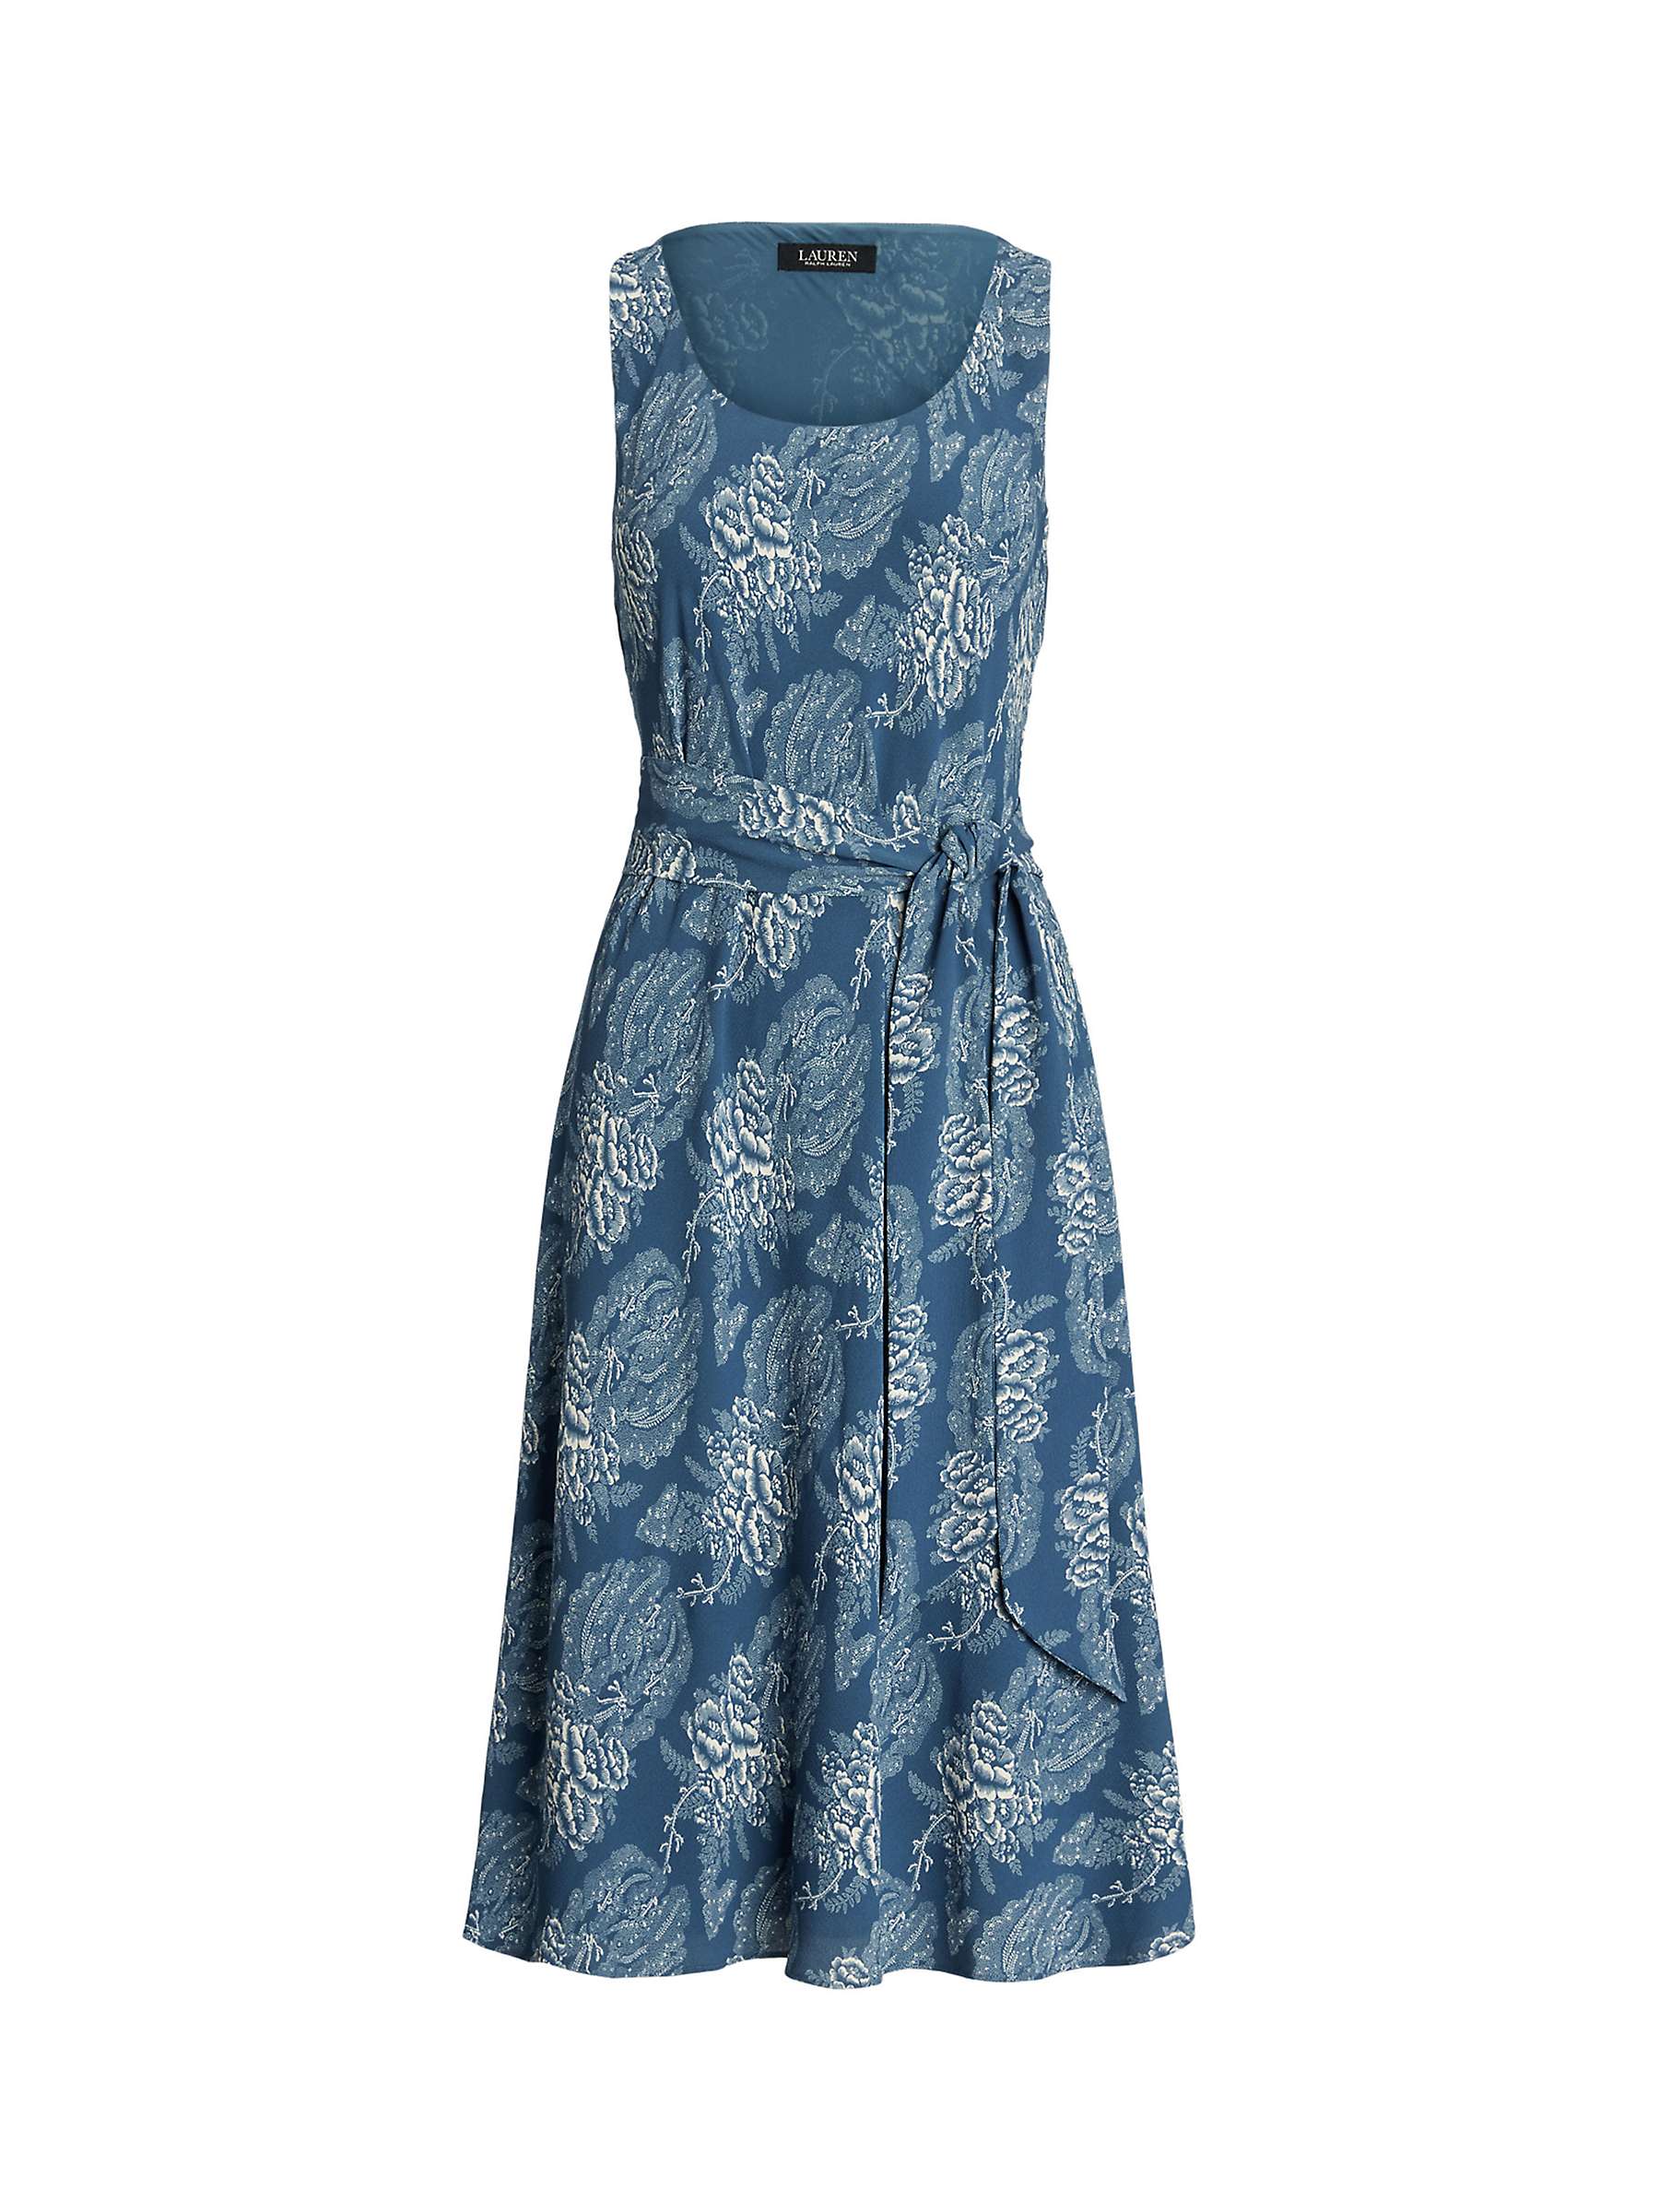 Buy Lauren Ralph Lauren Zawato Floral Dress, Blue Online at johnlewis.com